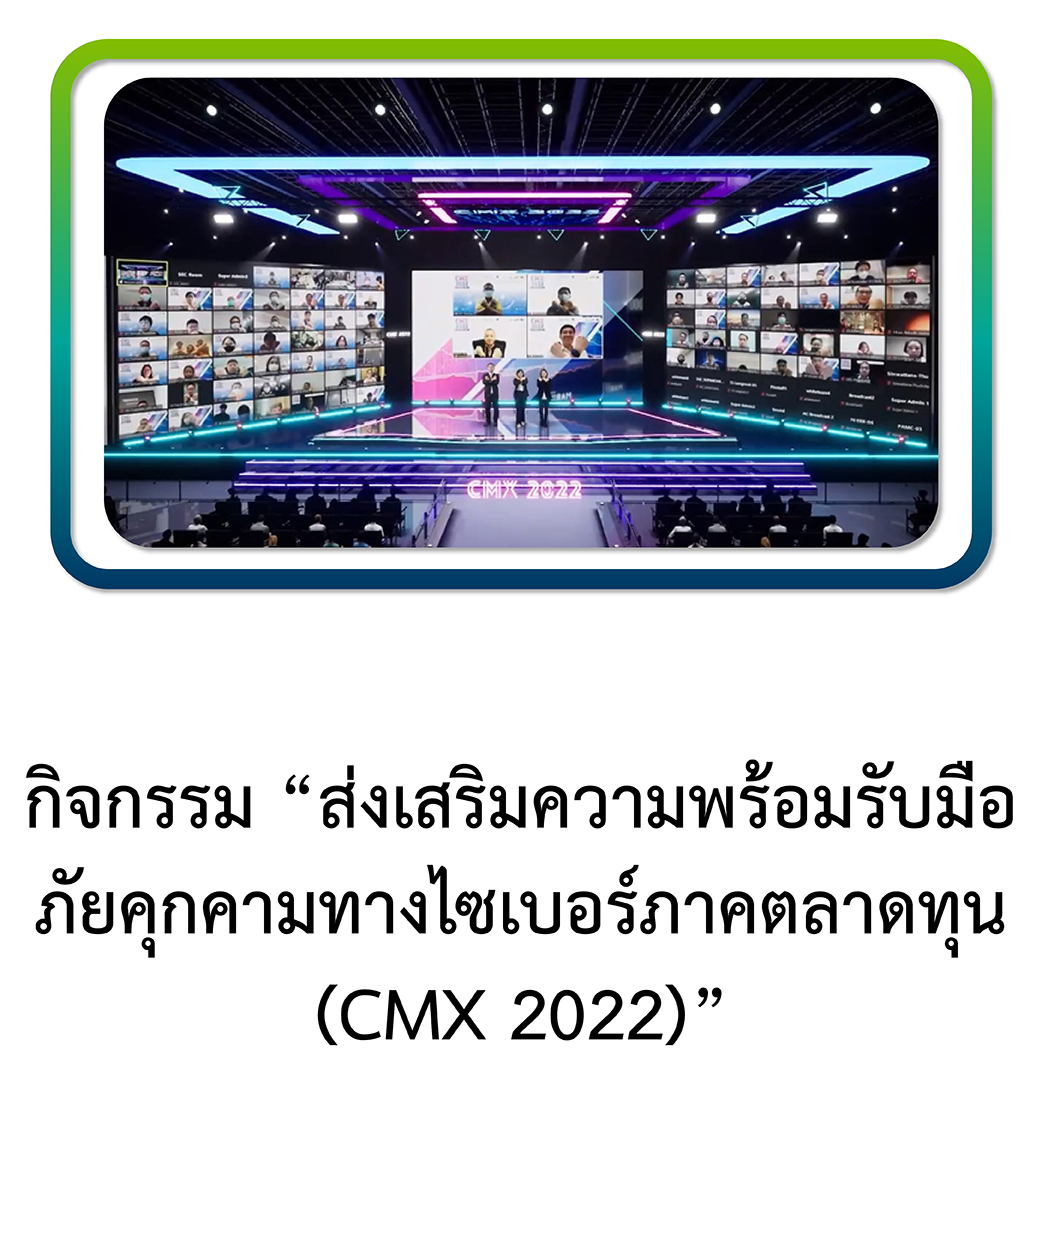 CMX 2022